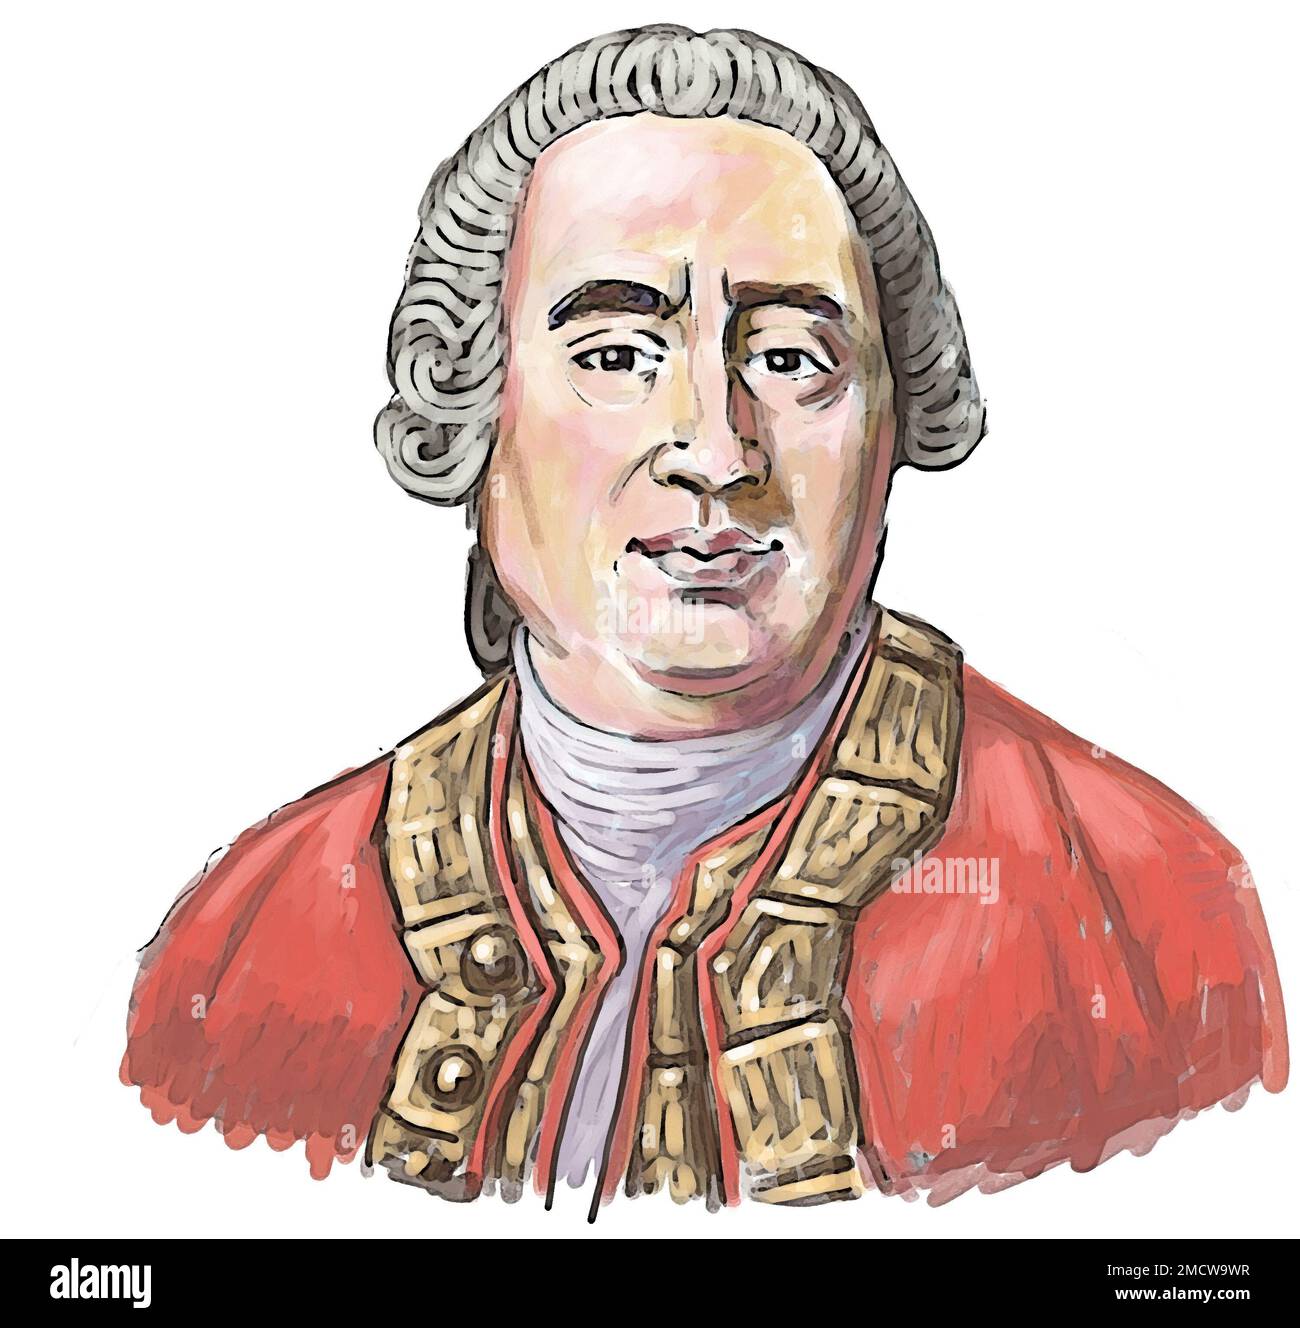 Portrait artistique du philosophe, historien et économiste écossais des Lumières, David Hume, connu pour son empirisme philosophique, son scepticisme et son natualisme. Banque D'Images